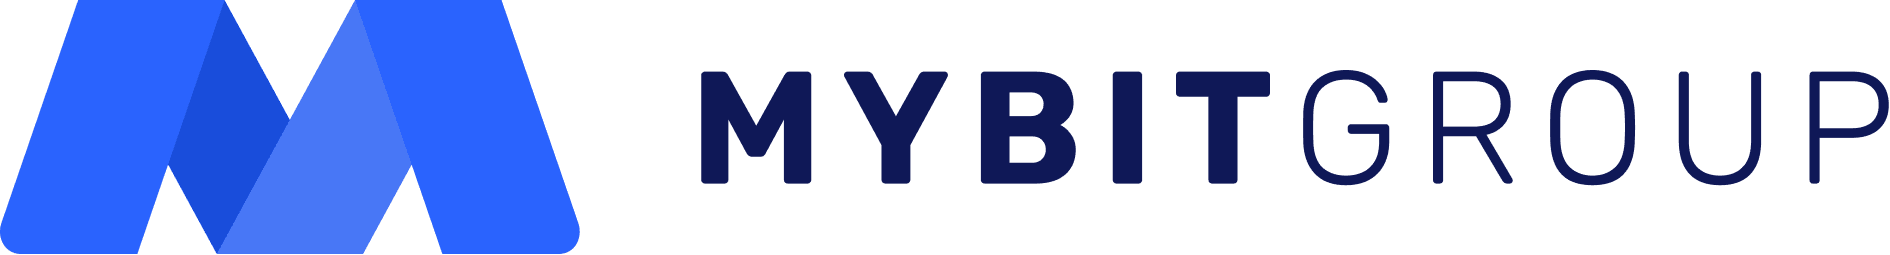 MyBit Group logo